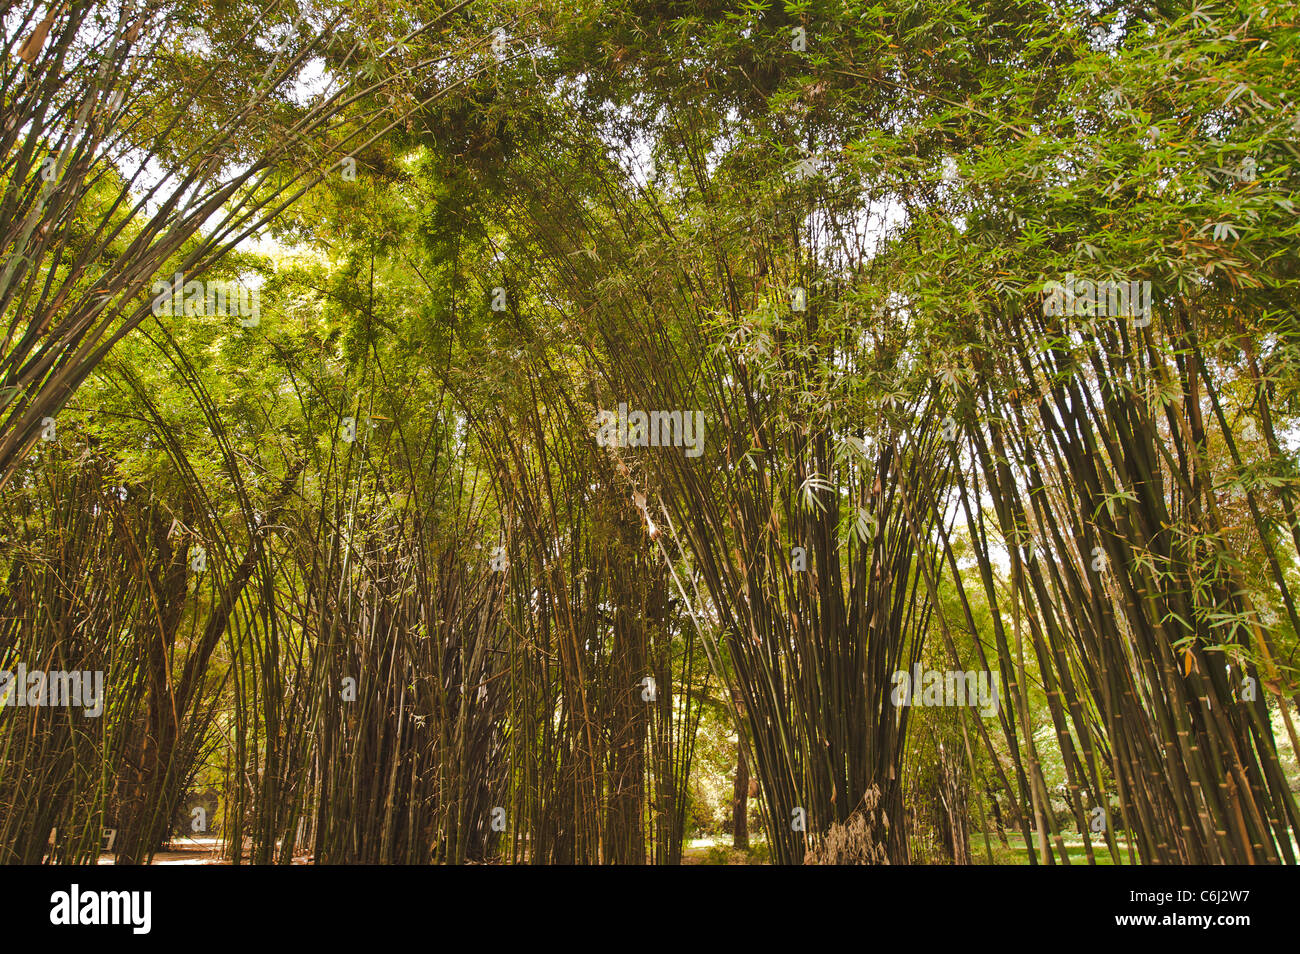 Bamboo pattern. Stock Photo